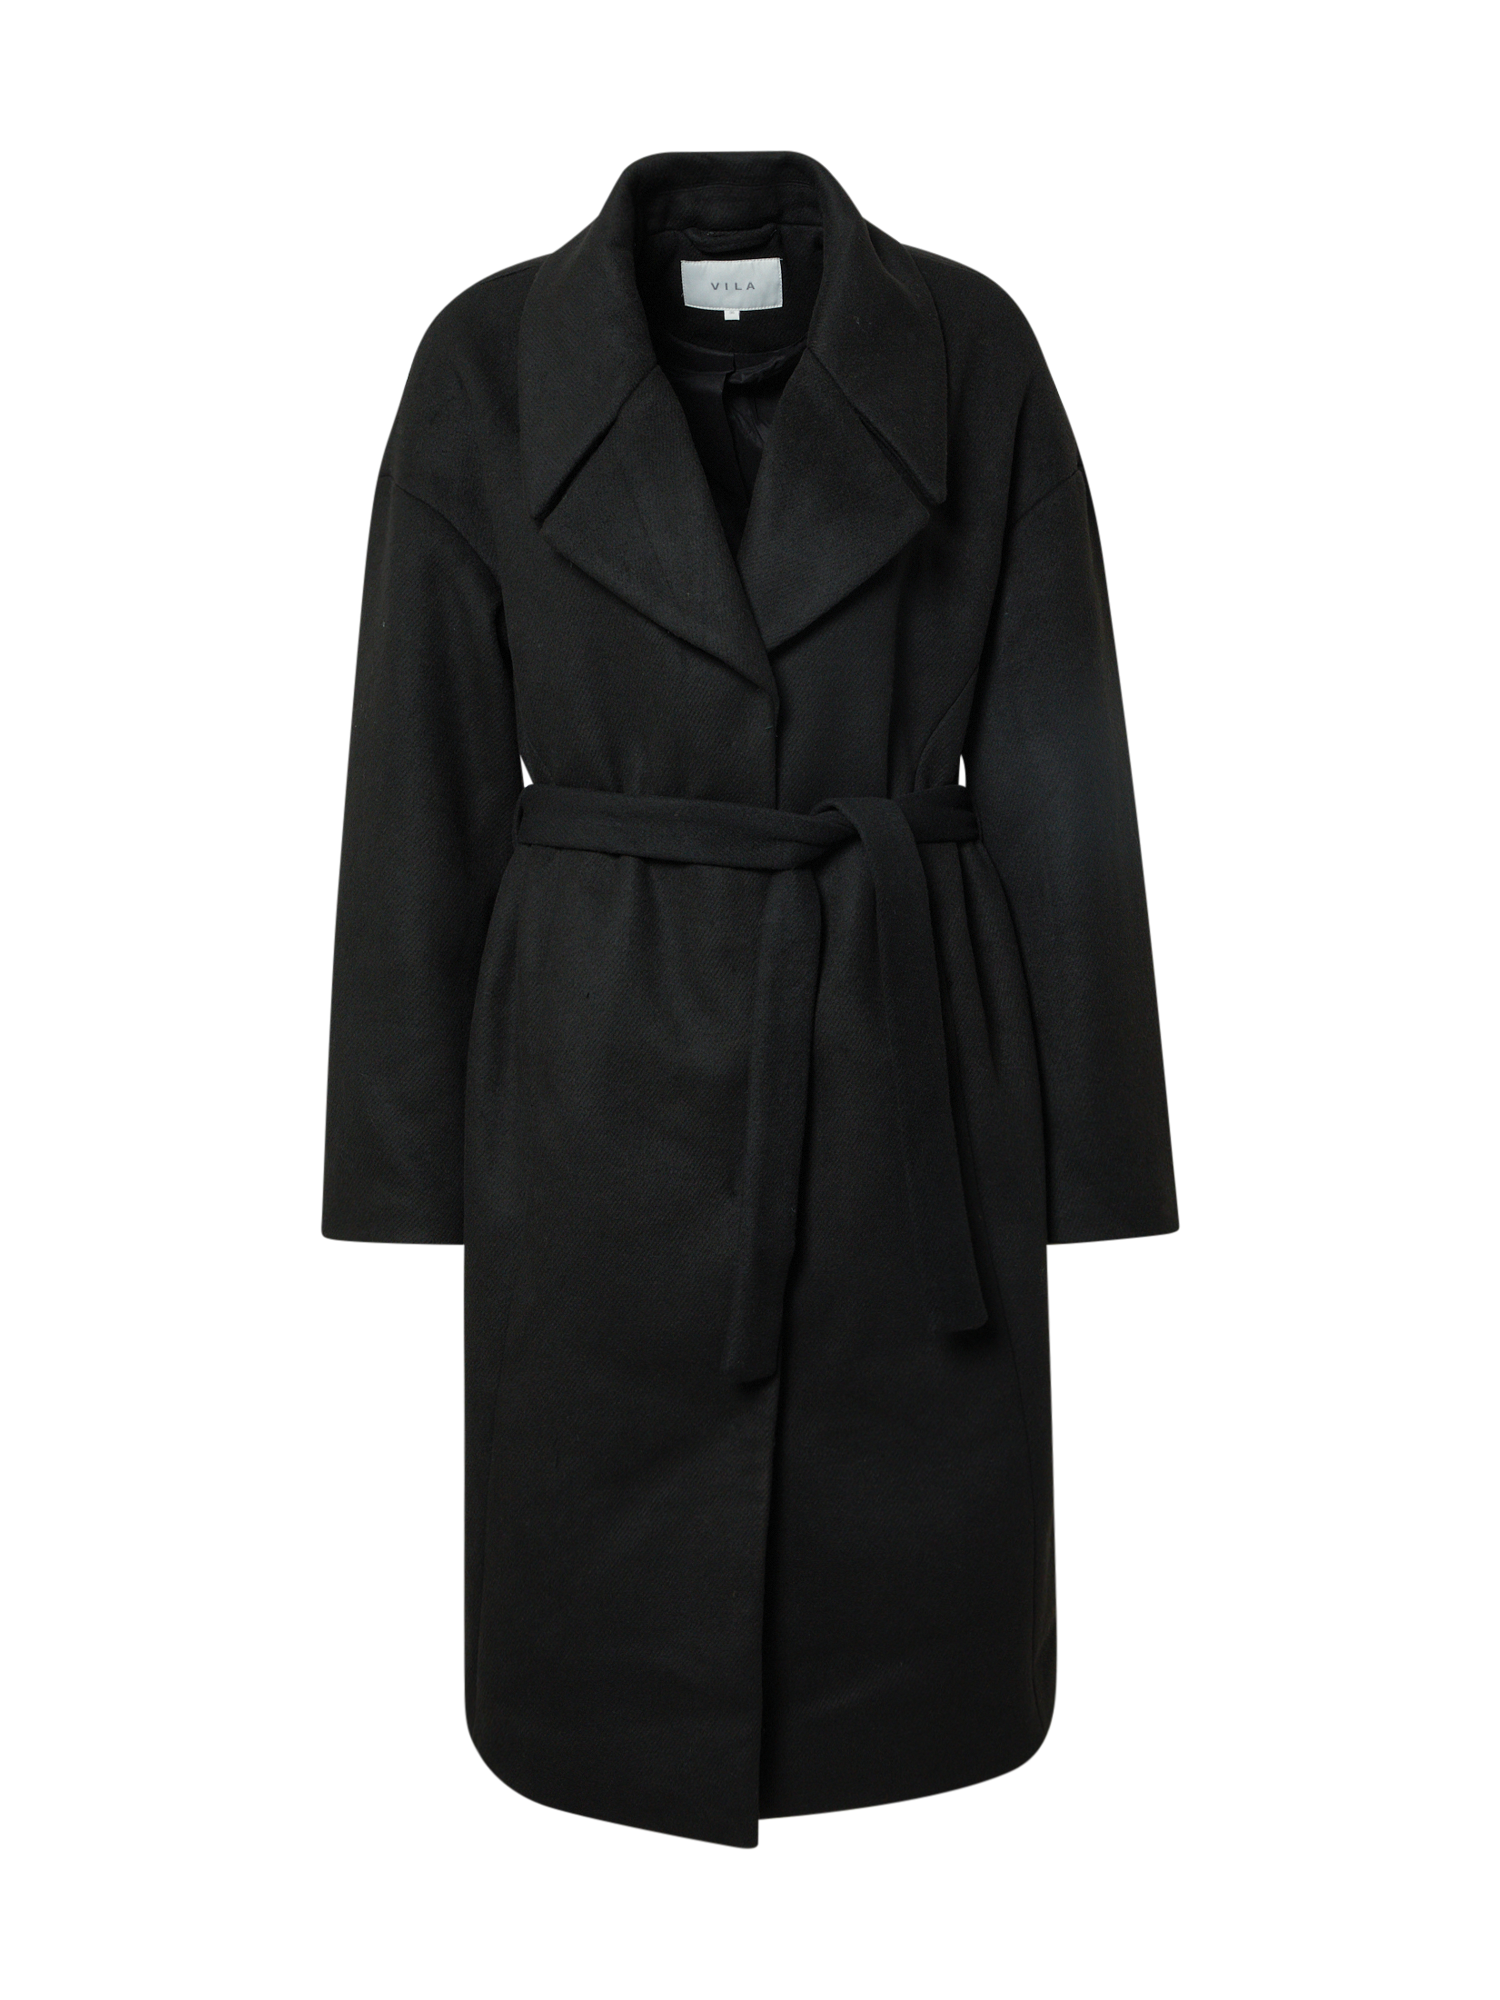 Odzież Kobiety VILA Płaszcz przejściowy Candice w kolorze Czarnym 